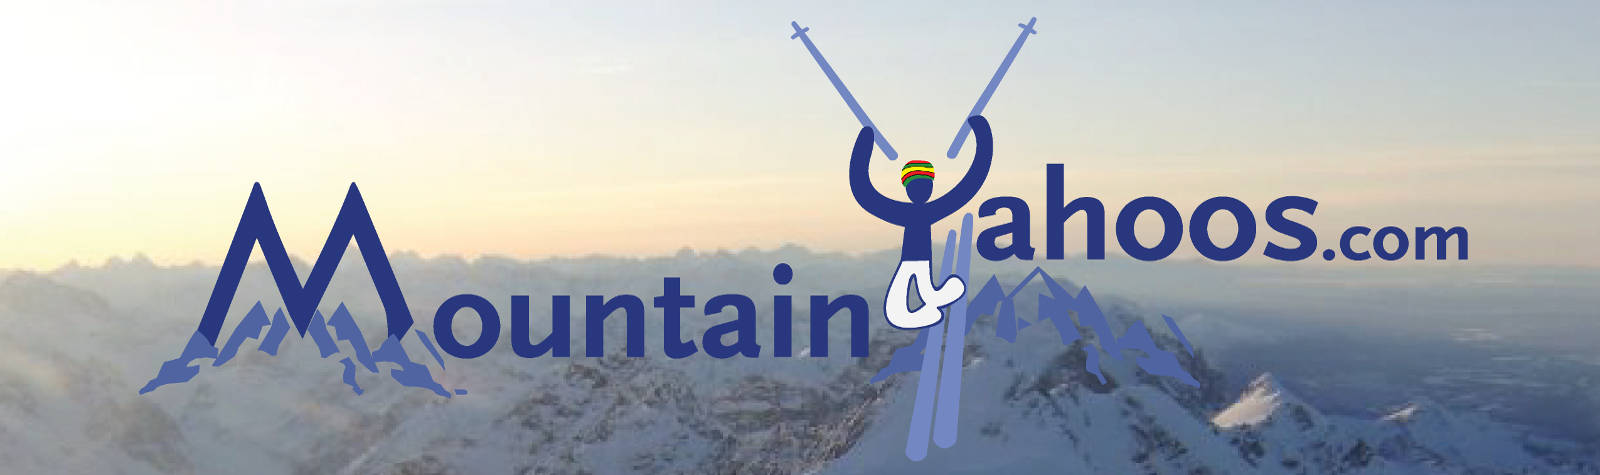 MountainYahoos.com Logo